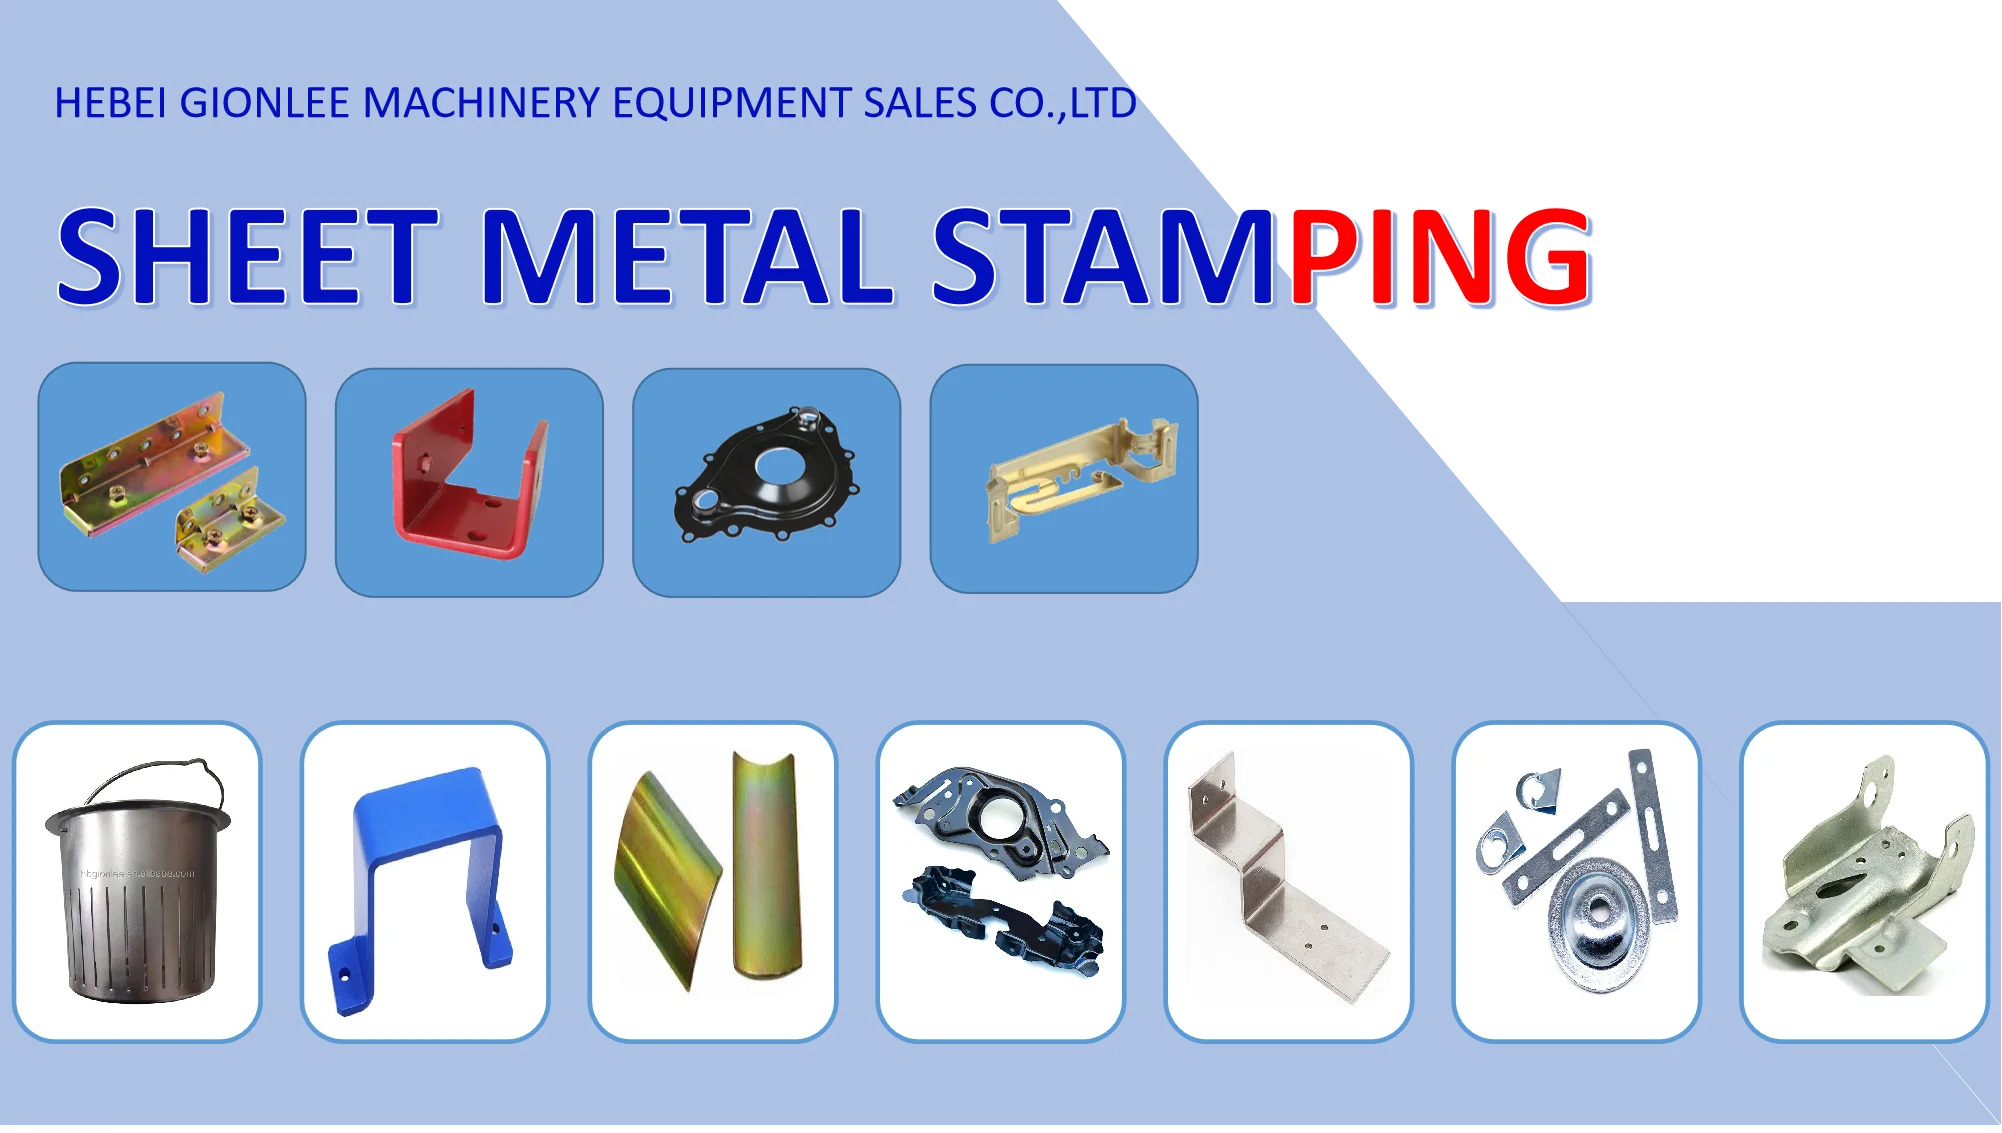 High Quality Sheet Metal Parts Services Sheet Metal Bending Stamping Sheet Metal Fabrication